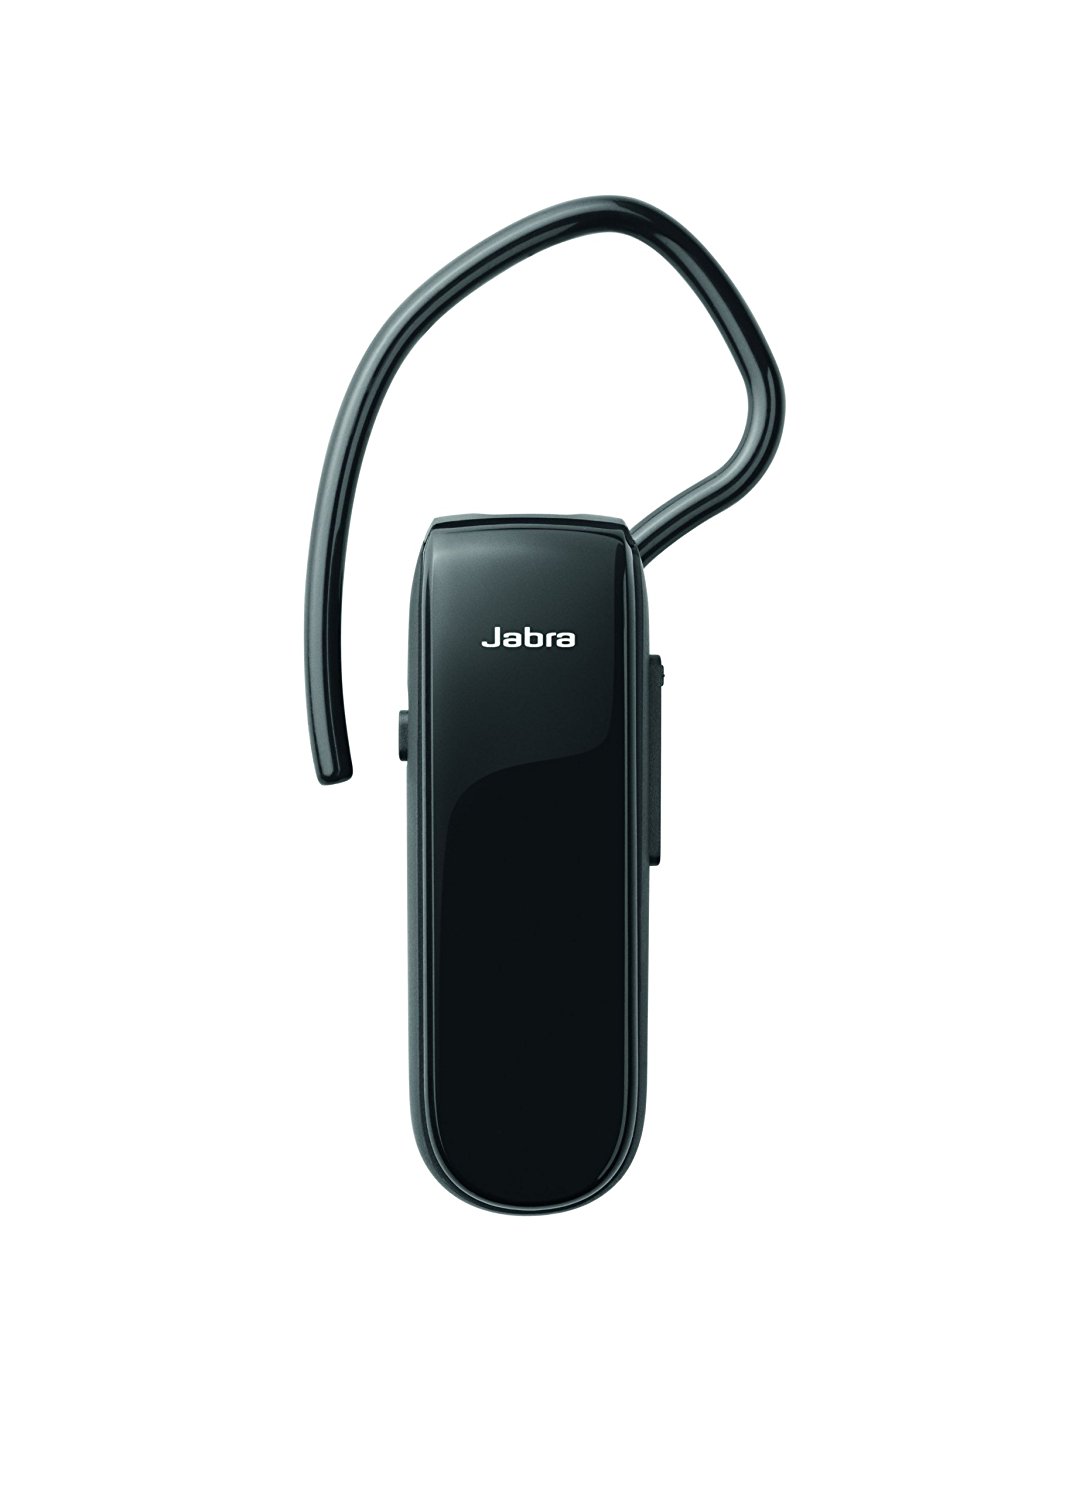 Jabra Classic. Headset-Typ: Monophon, Tragestil: Ohrbügel, Produktfarbe: Schwarz. Übertragungstechnik: Bluetooth, Operationsschlüssel: Lautstärke +, Lautsärke -. kabellose Reichweite: 30 m, Bluetooth-Profile: A2DP,HFP,HSP. Position Kopfhörerlautsprecher: